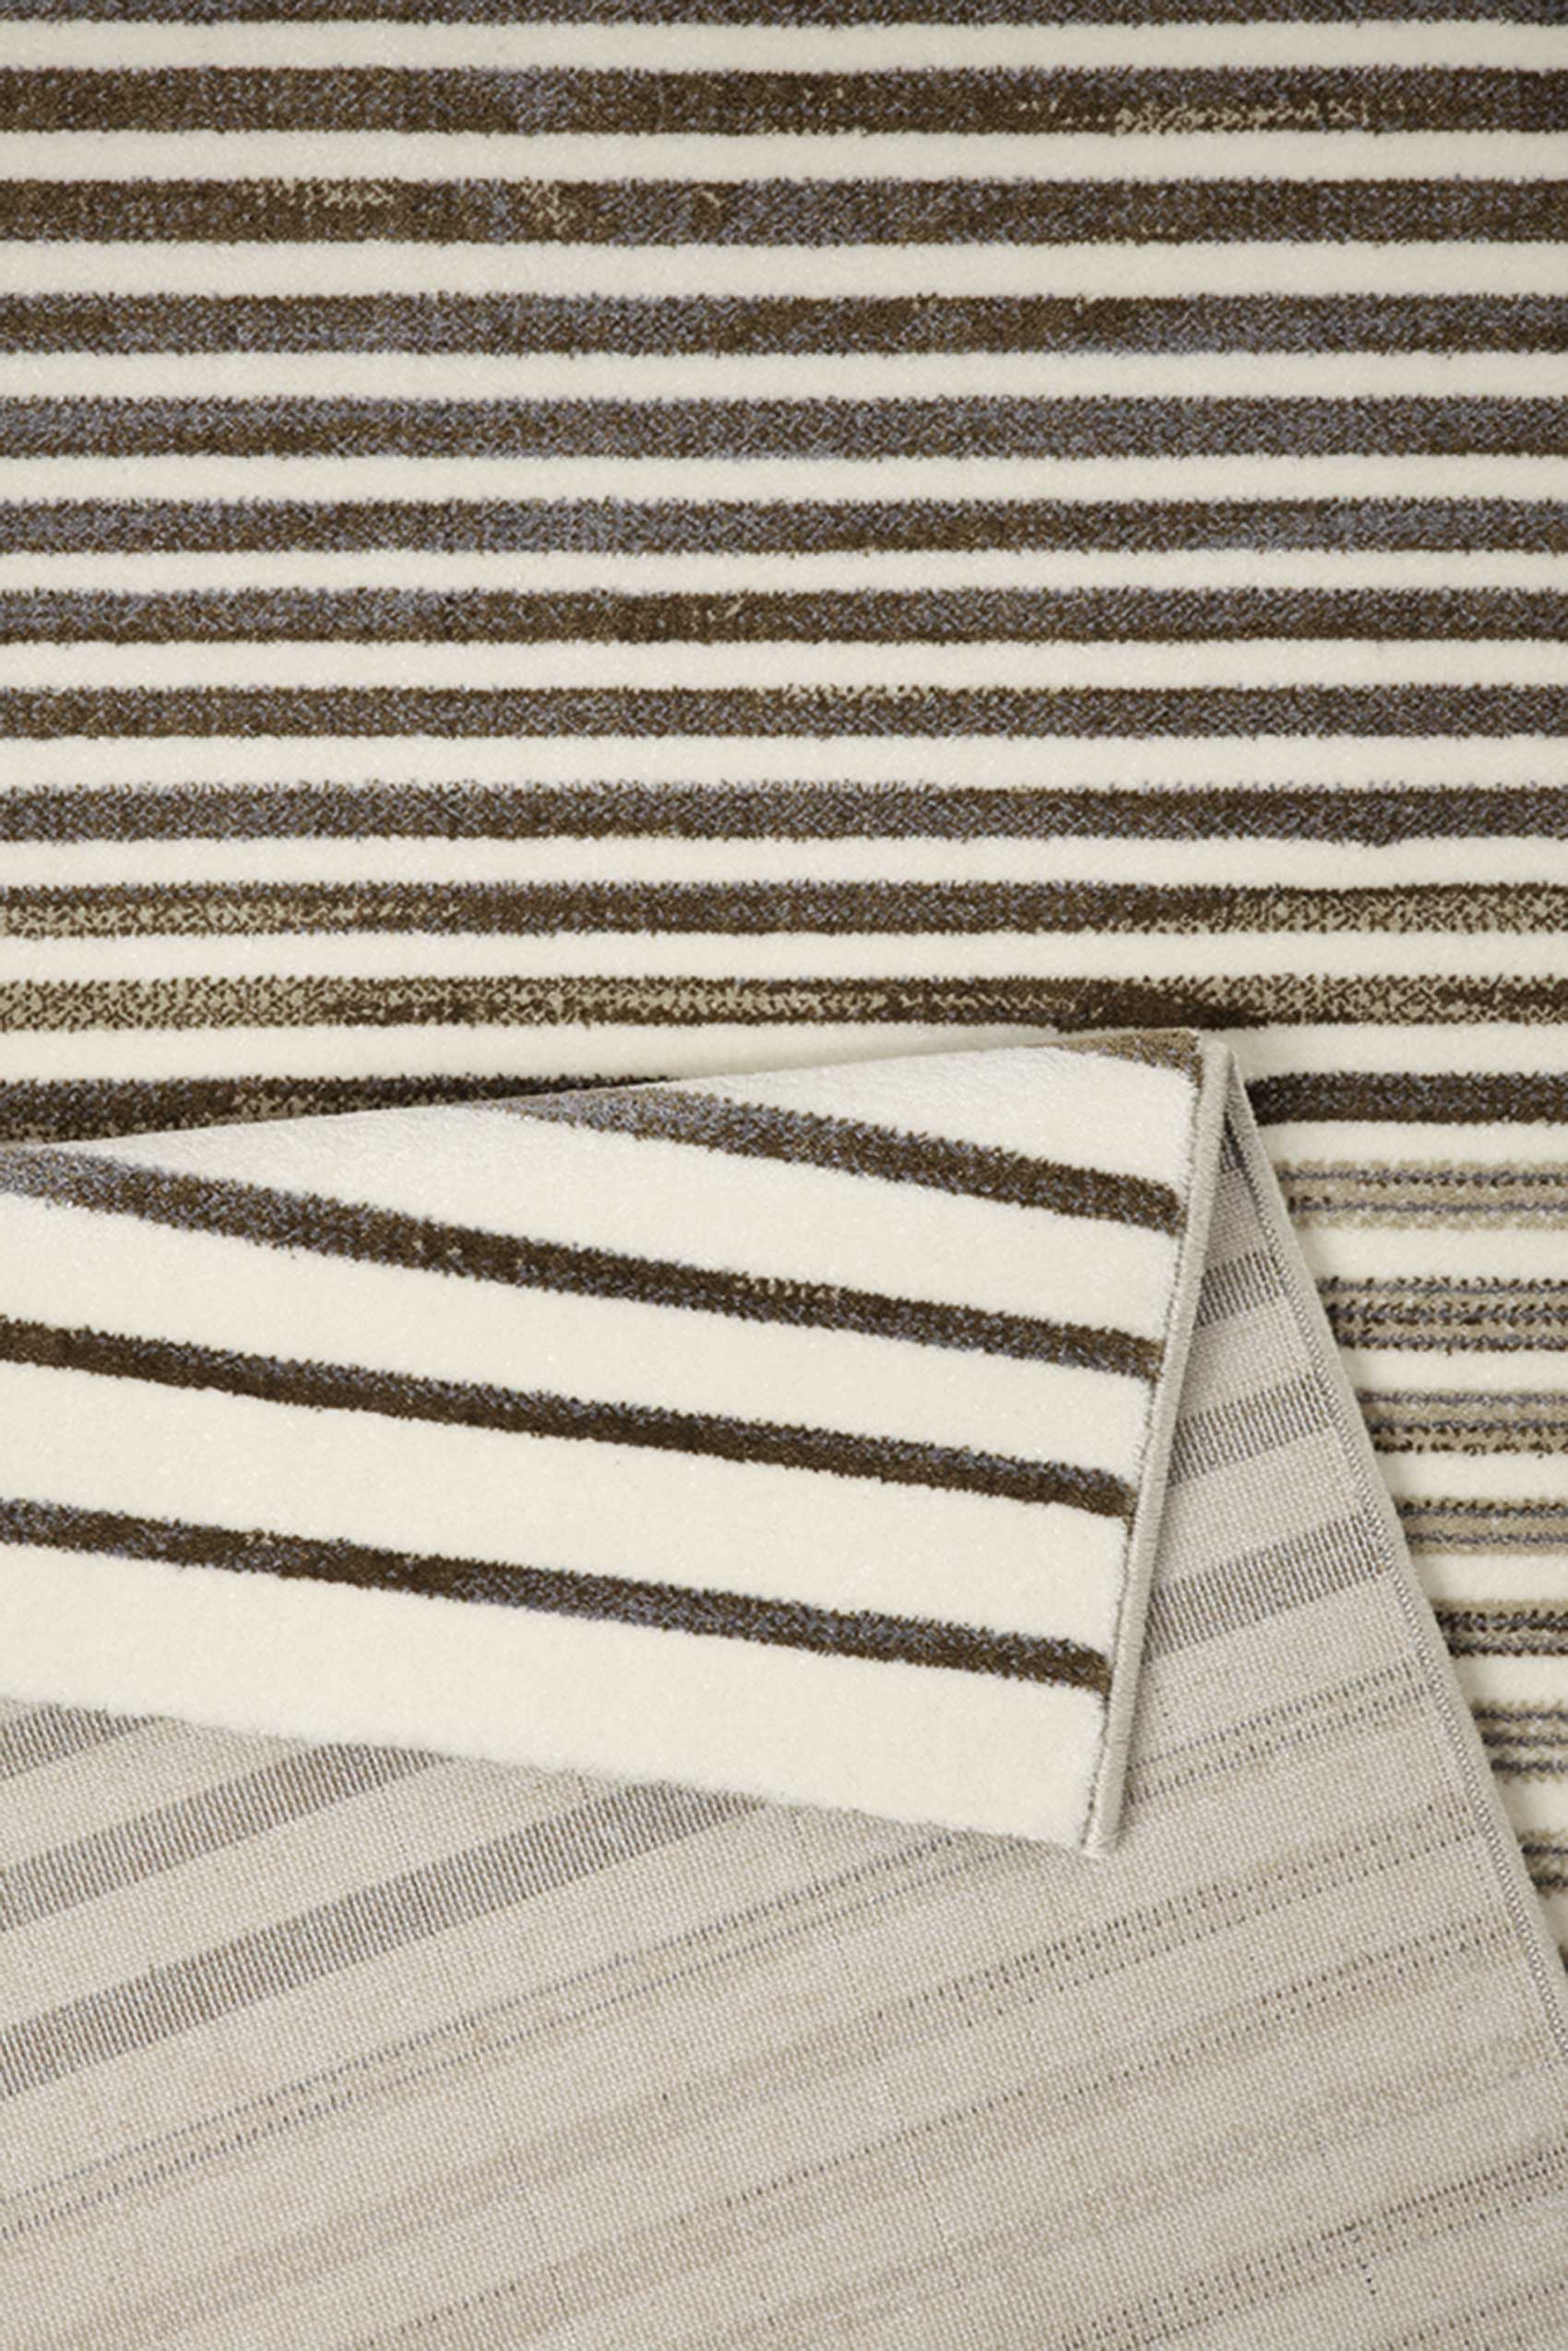 Esprit Kurzflor Teppich » Nifty Stripes « braun taupe beige - Ansicht 3